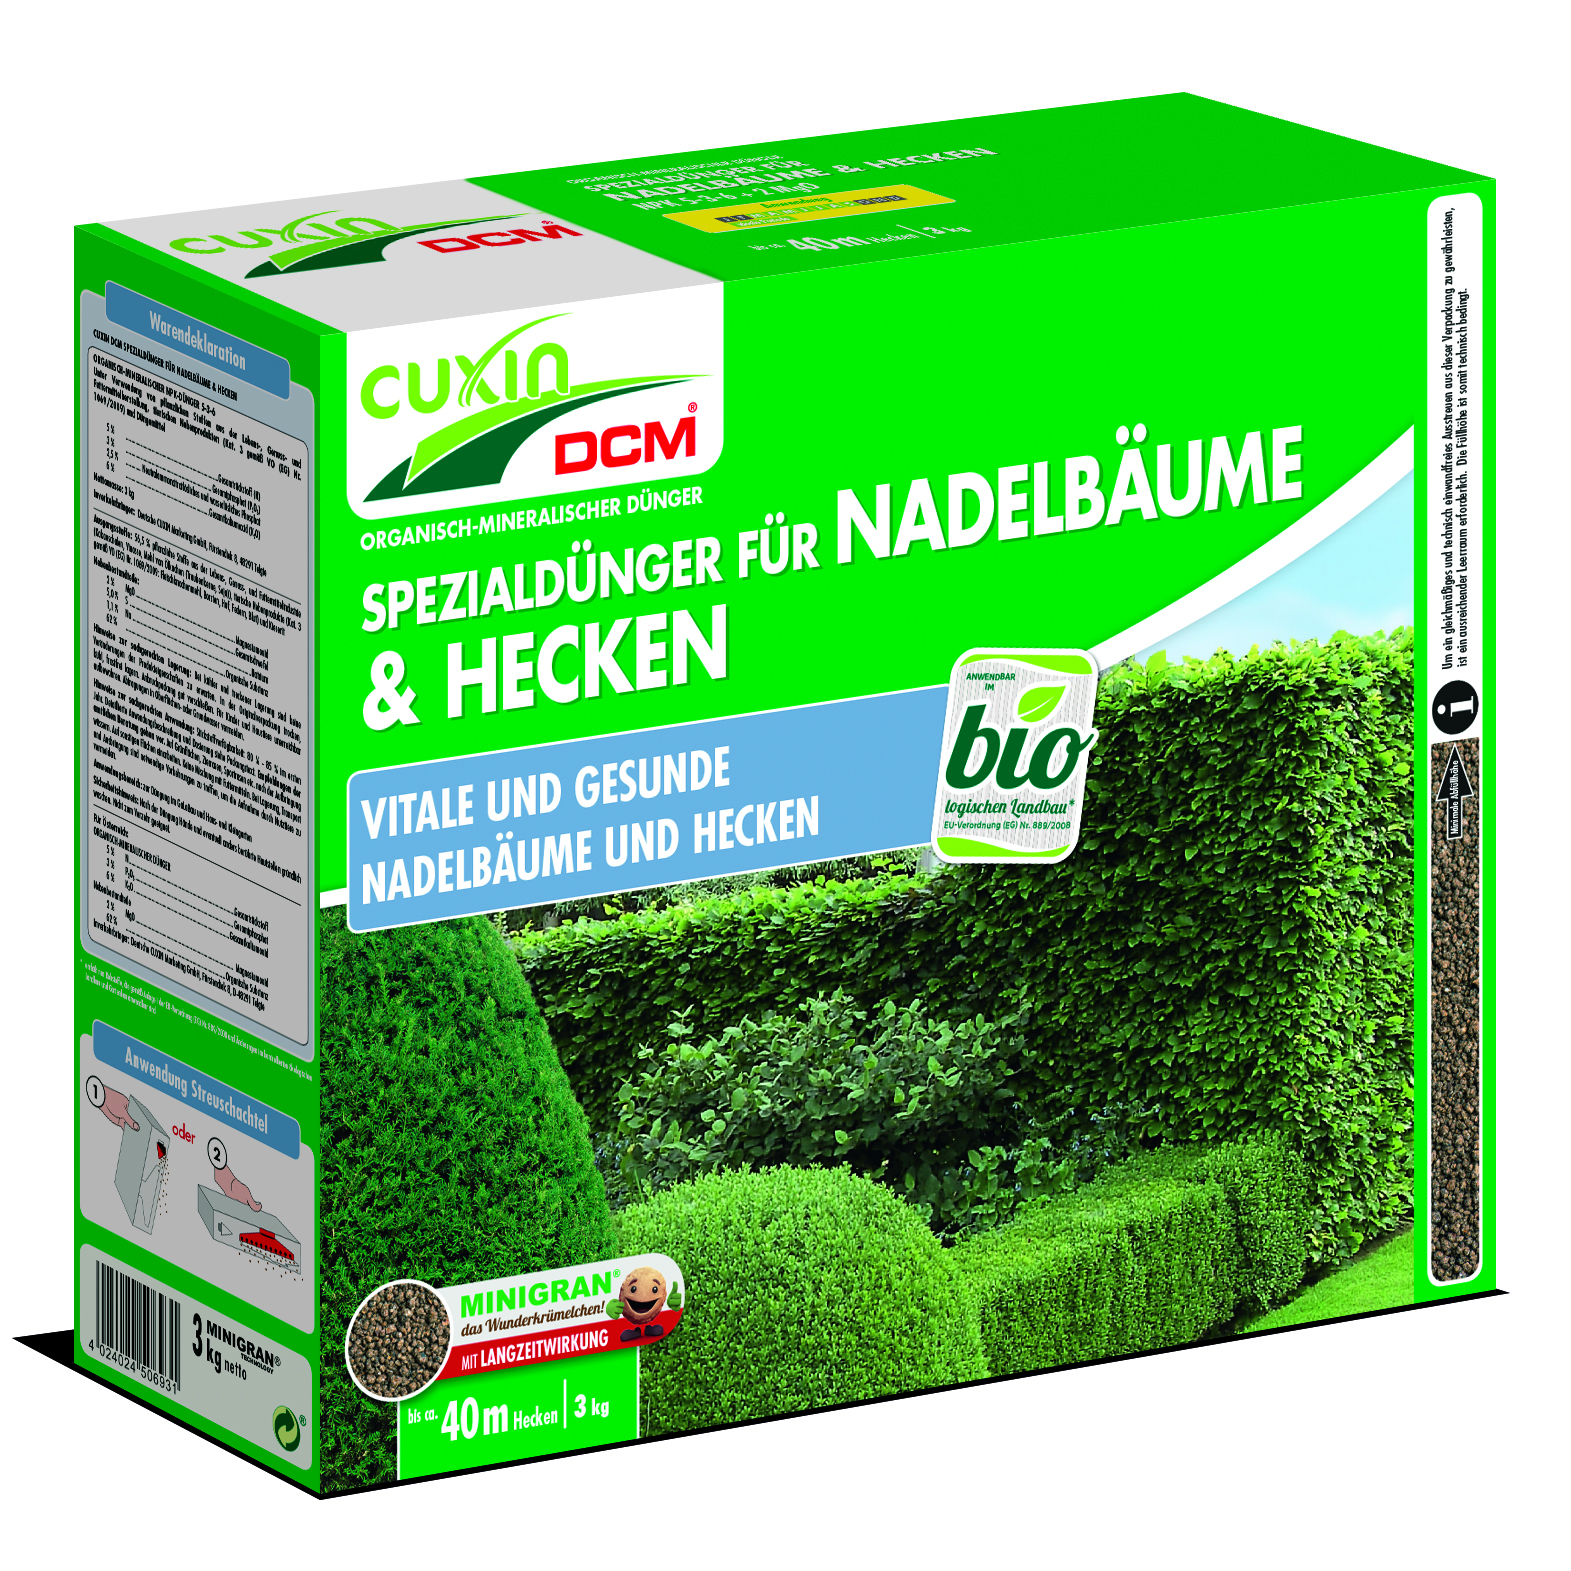 Cuxin DCM Bio Spezialdünger für Nadelbäume und Hecken 3 kg